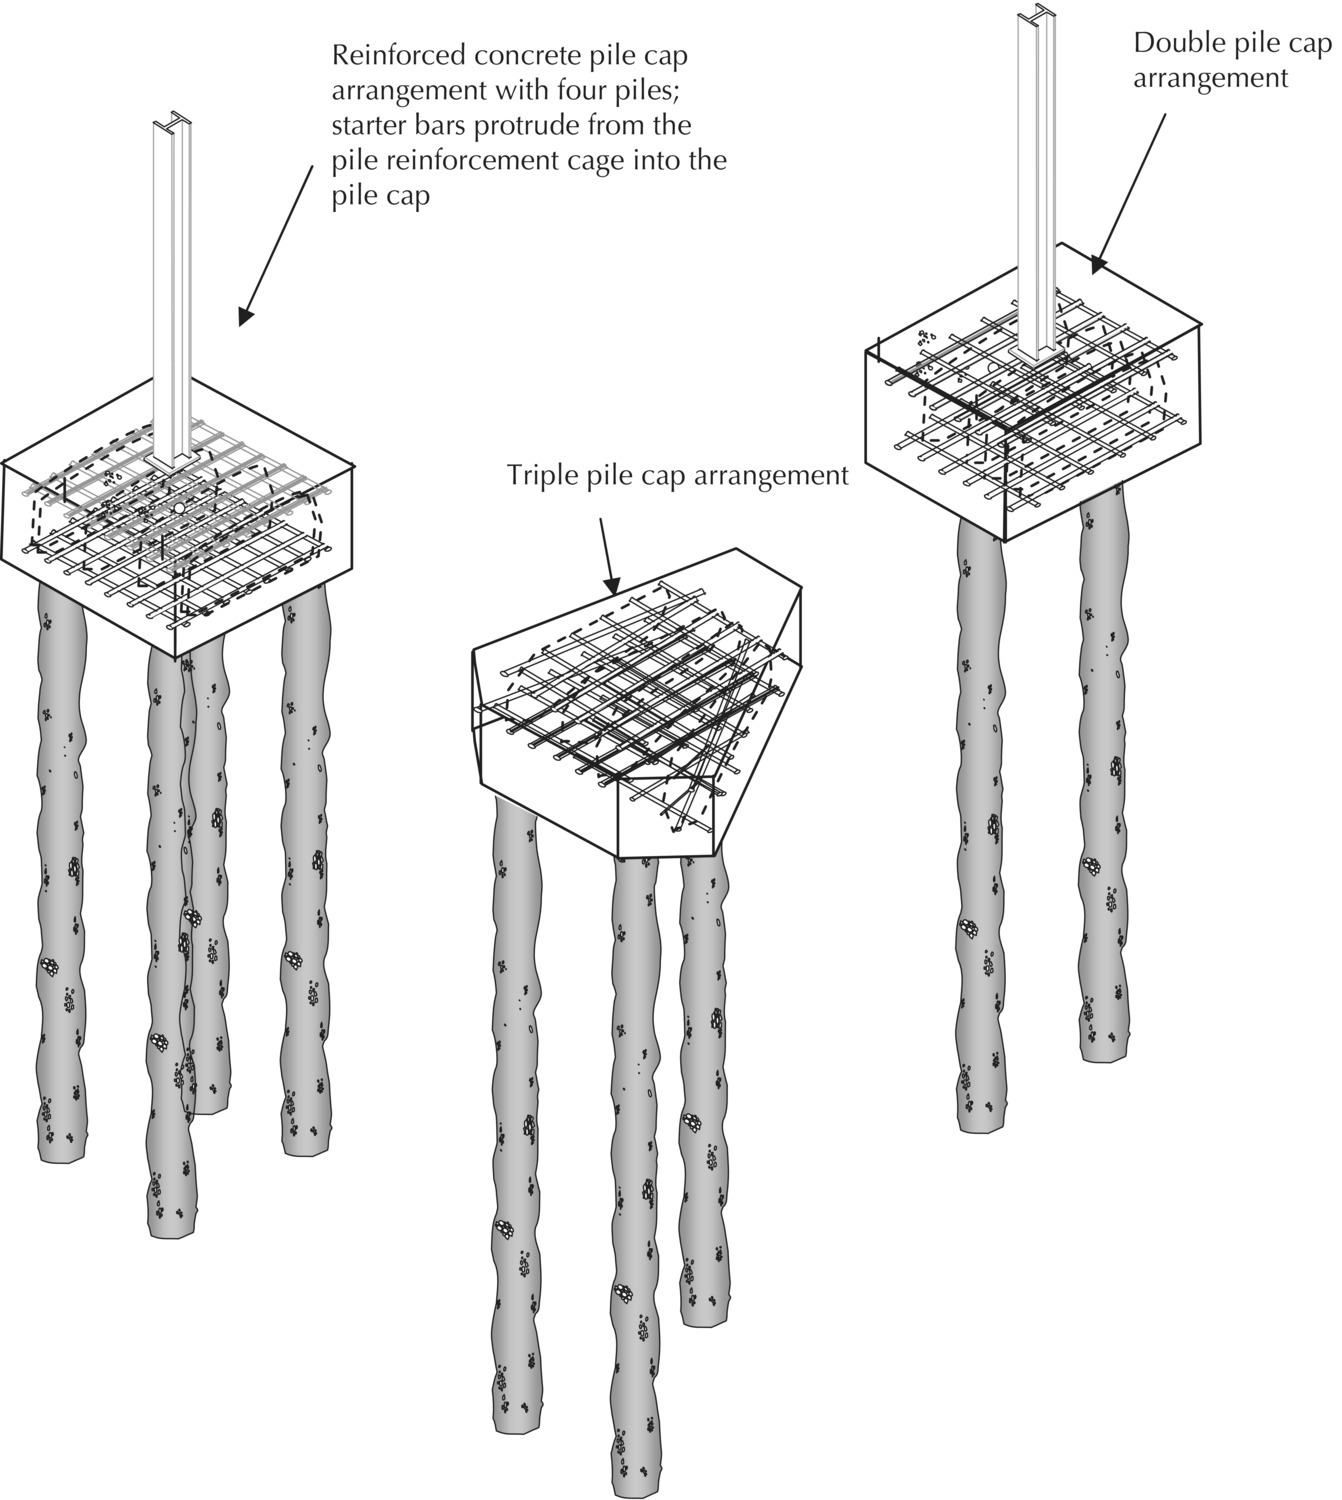 Illustrations of concrete pile cap arrangements with arrows indicating reinforced concrete pile cap arrangement with 4 piles, triple pile cap arrangement, and double pile cap arrangement.